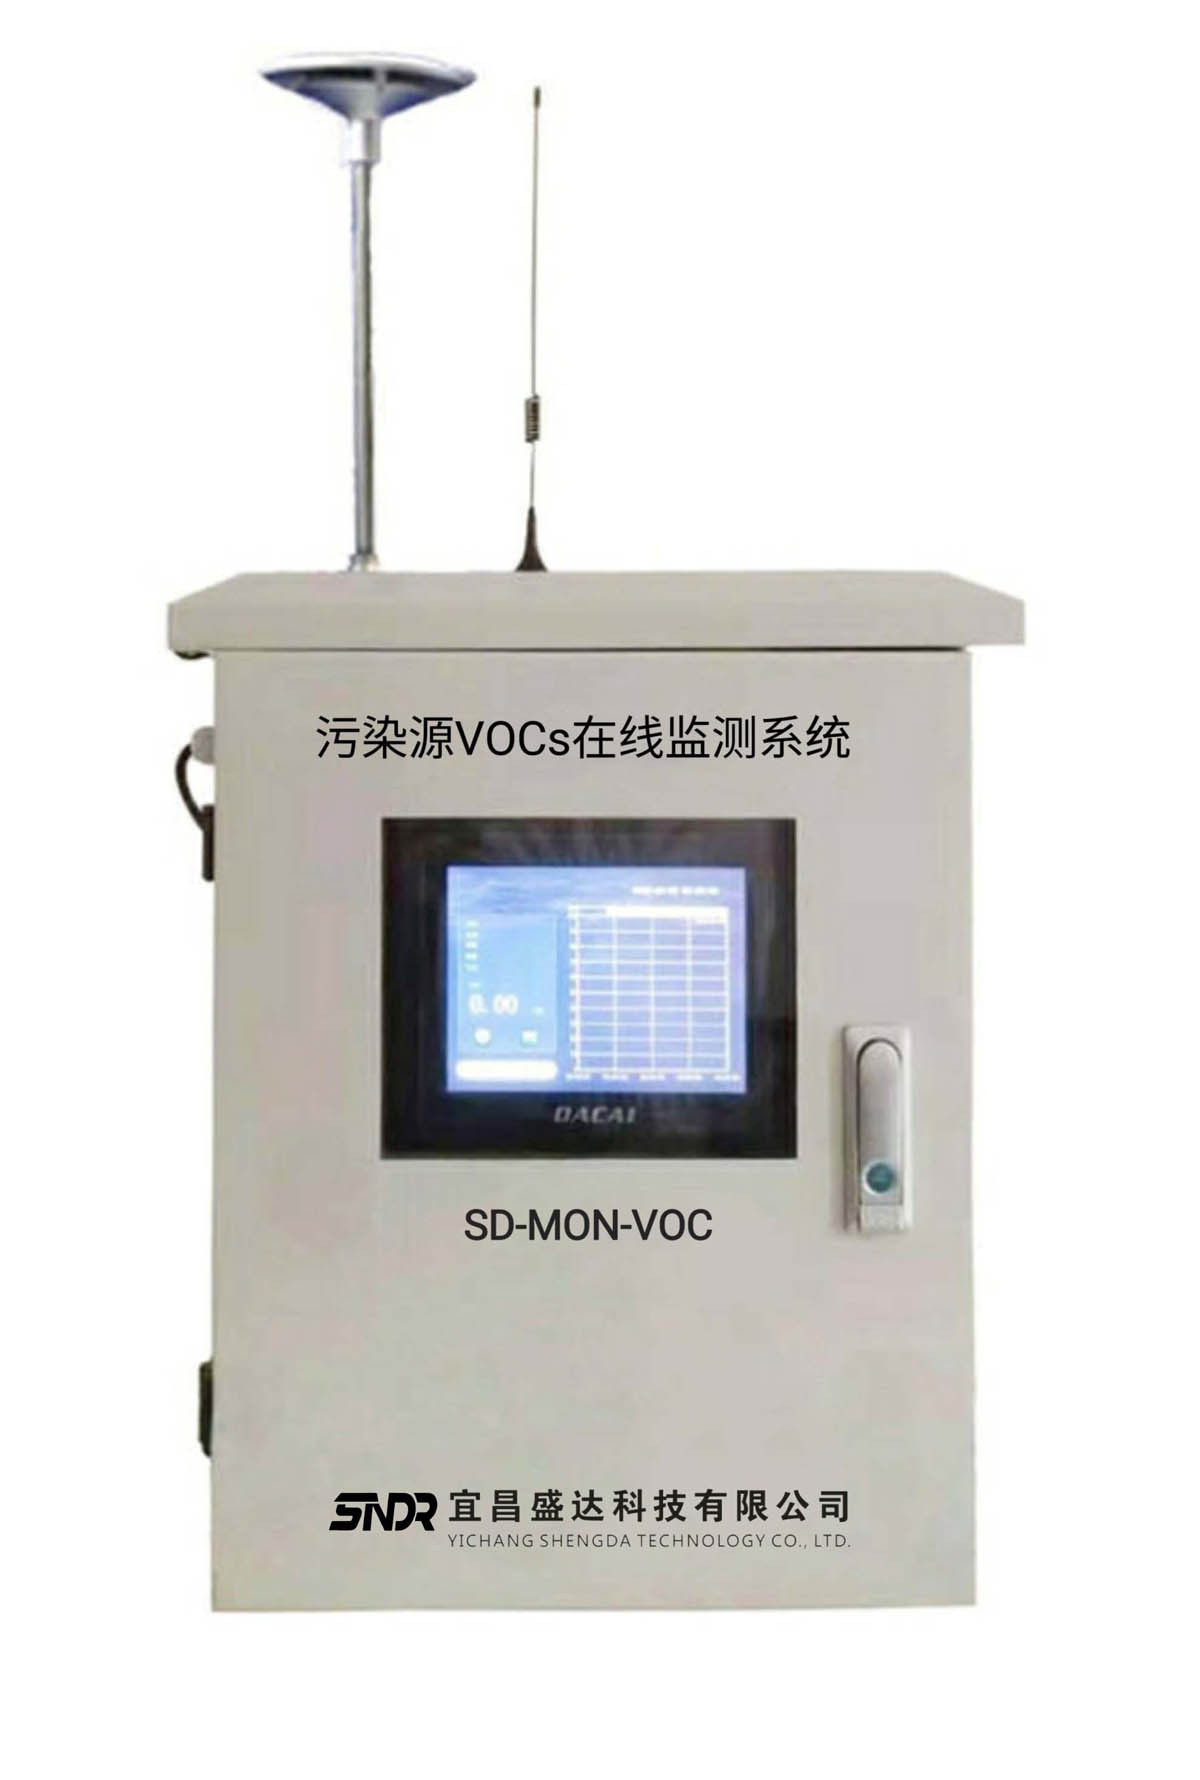 固定式VOC在线监测仪设备